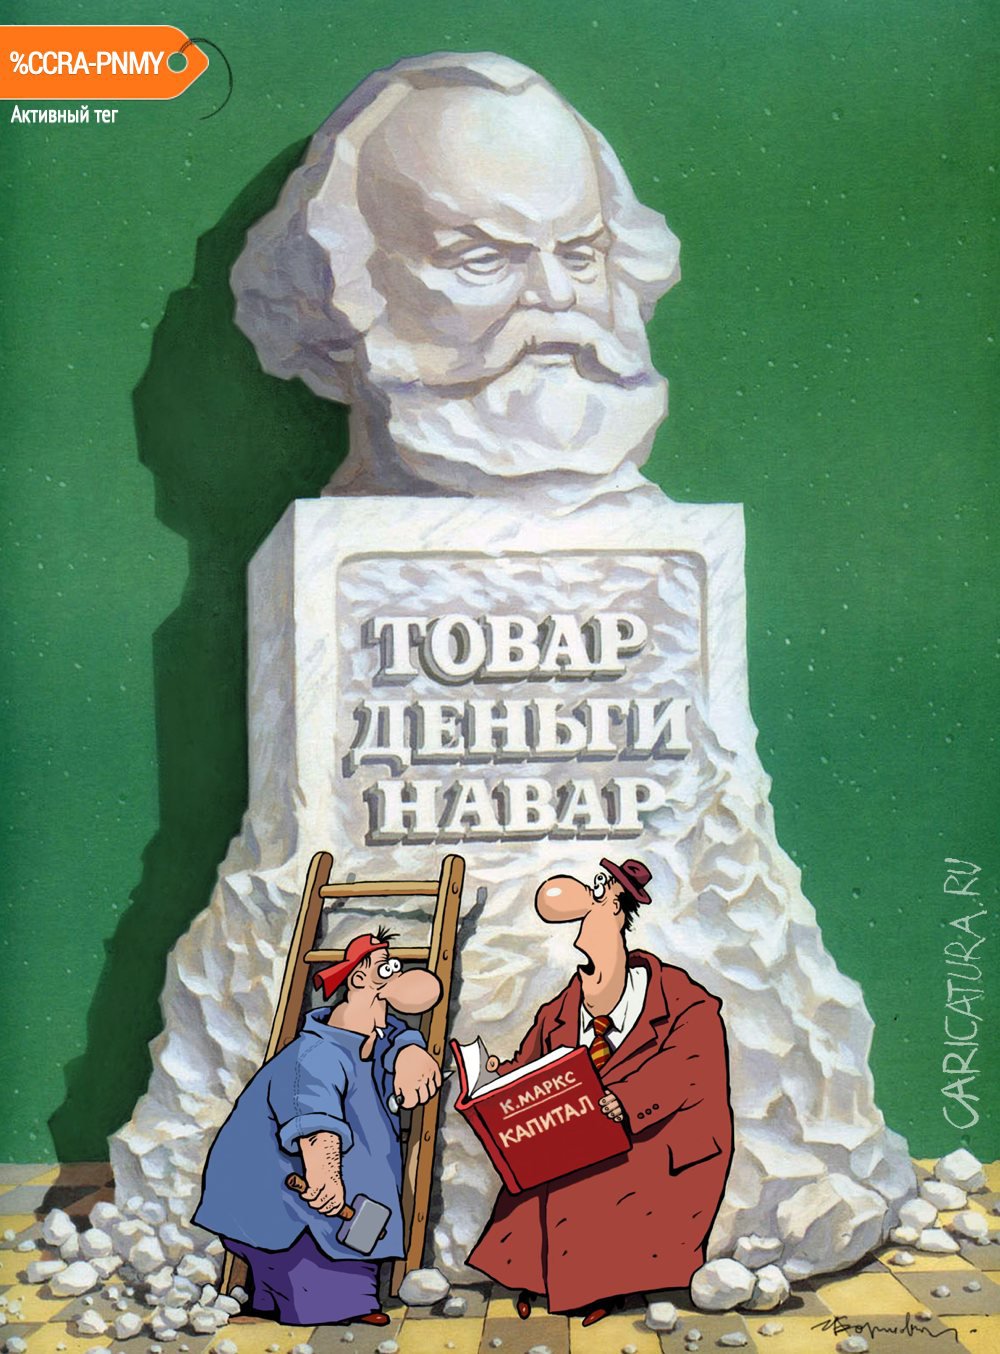 Карикатура "Товар, деньги, навар", Игорь Елистратов